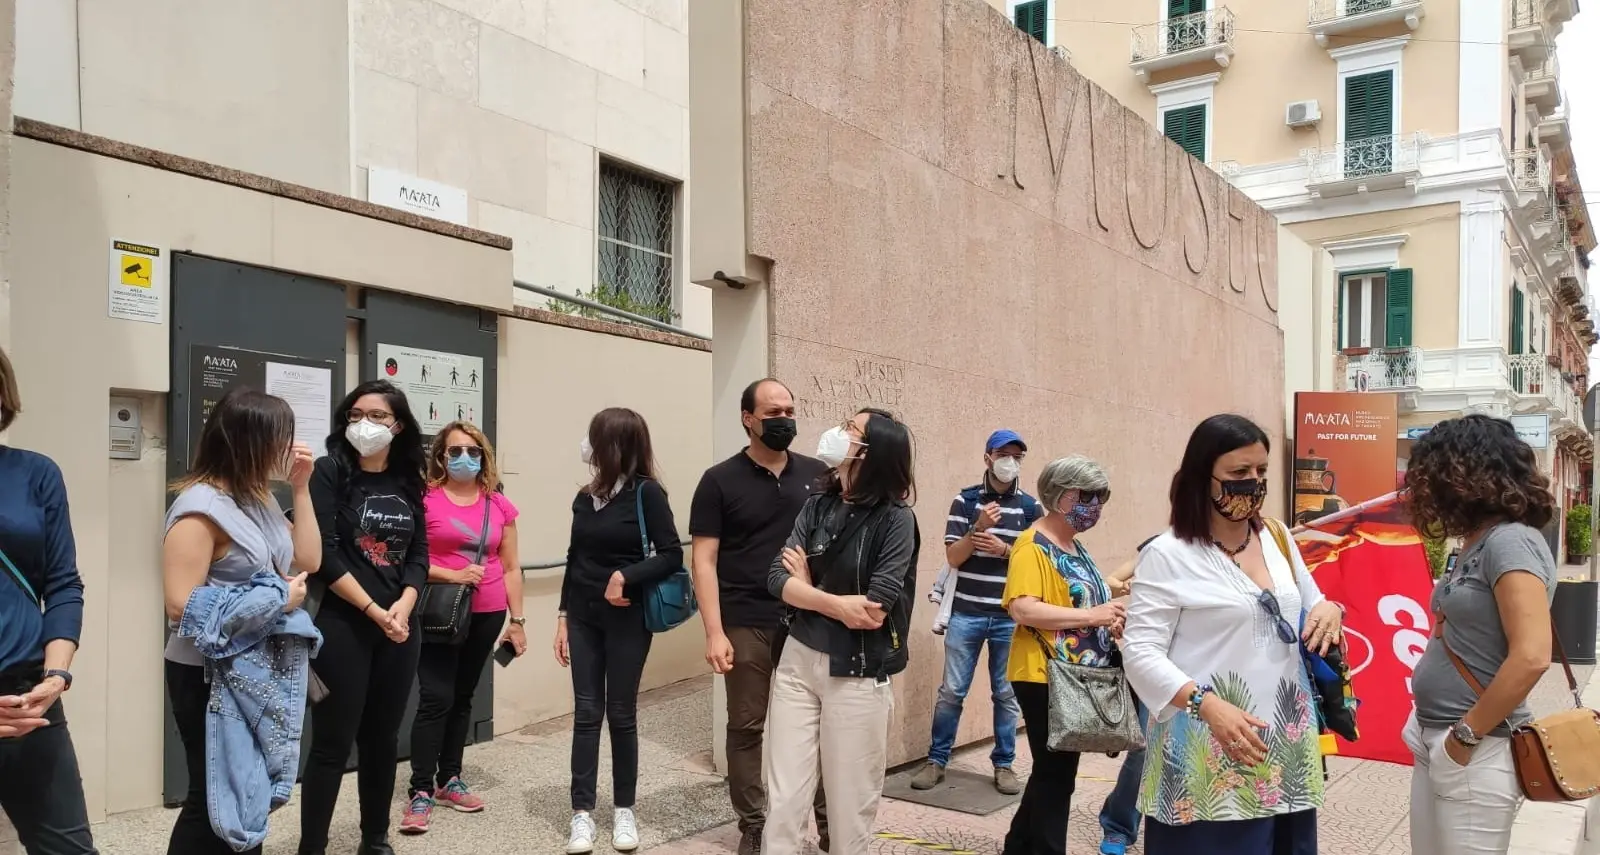 Protesta addetti servizi museali Nova Apulia: sbattuti fuori dopo vent'anni. Il nostro lavoro lo farà un'app